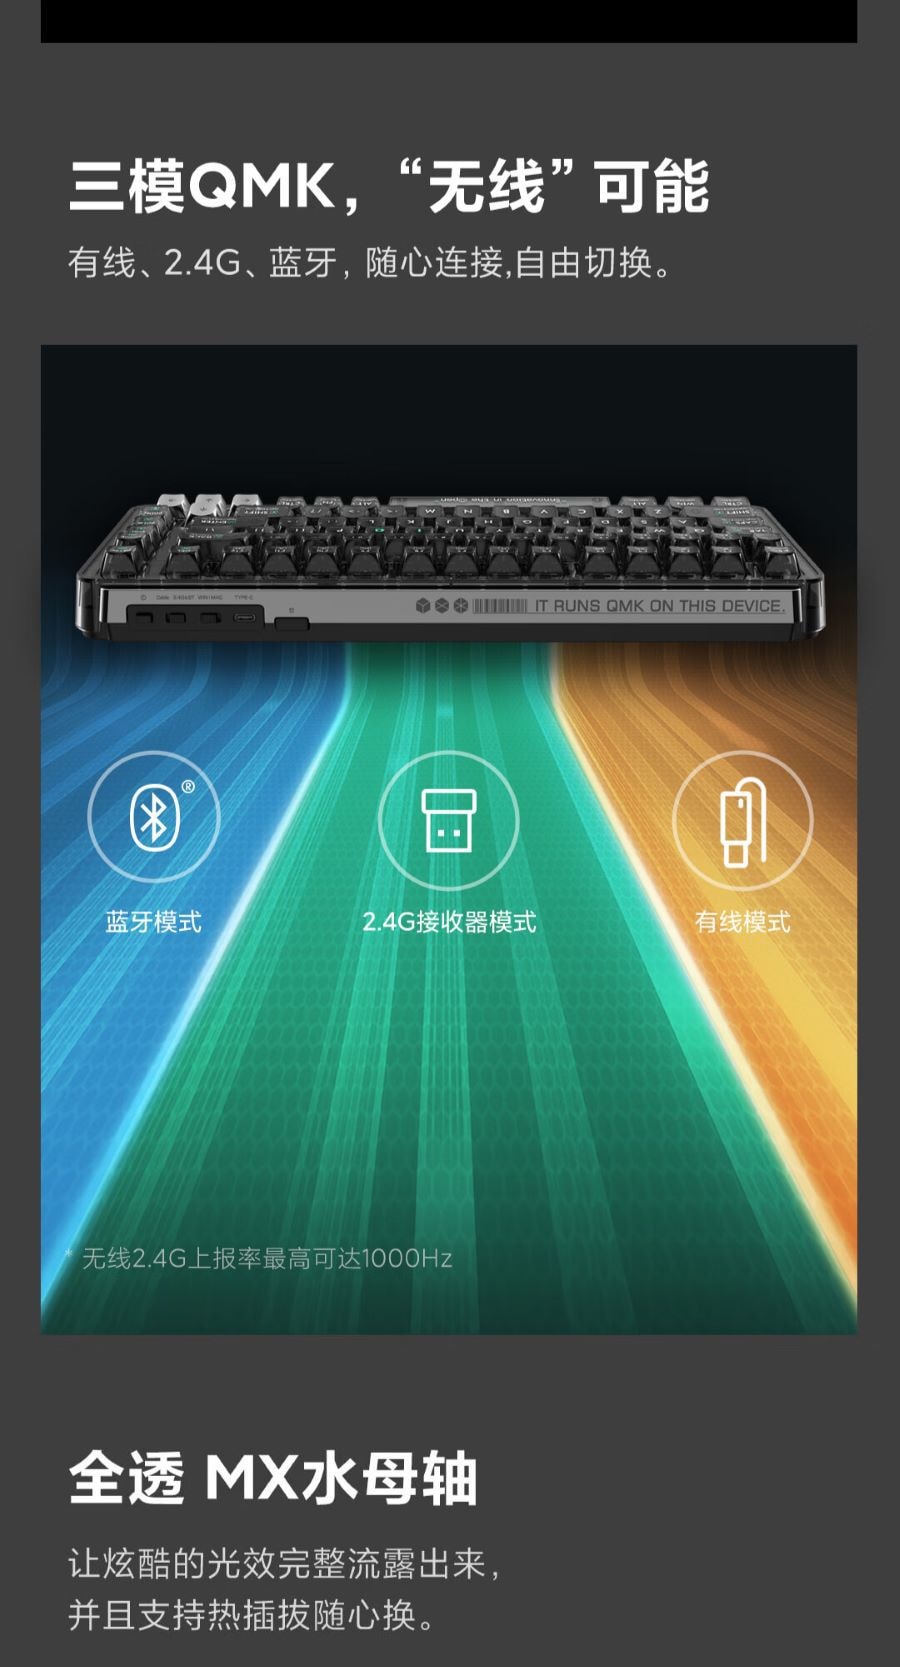 小米生態鏈 MIIIW米物 BlackIO客製機械鍵盤 暗銀